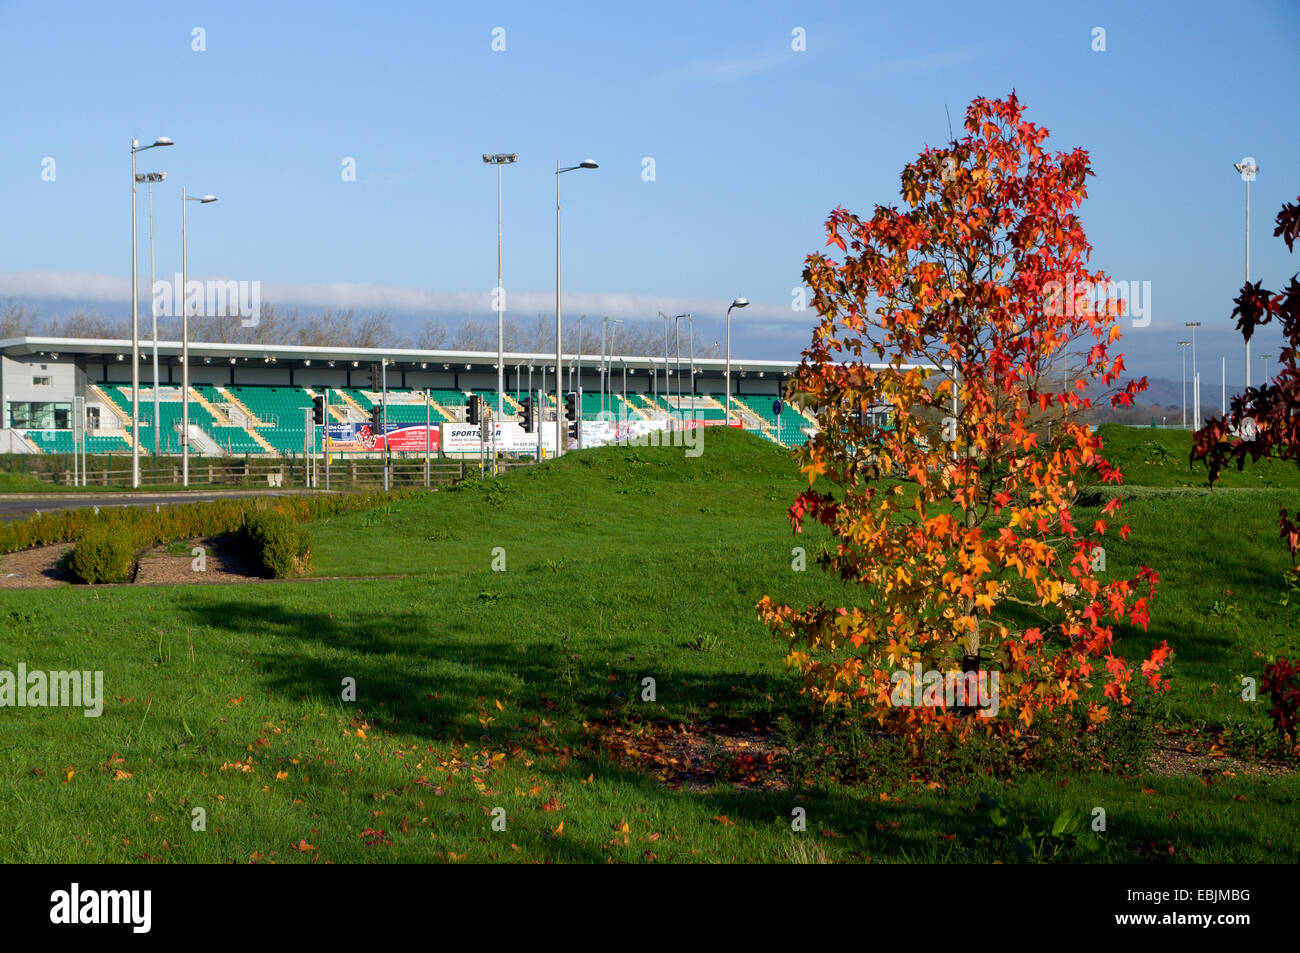 Cardiff internationale Leichtathletik-Stadion, Leckwith Road, Cardiff, Wales, UK. Stockfoto